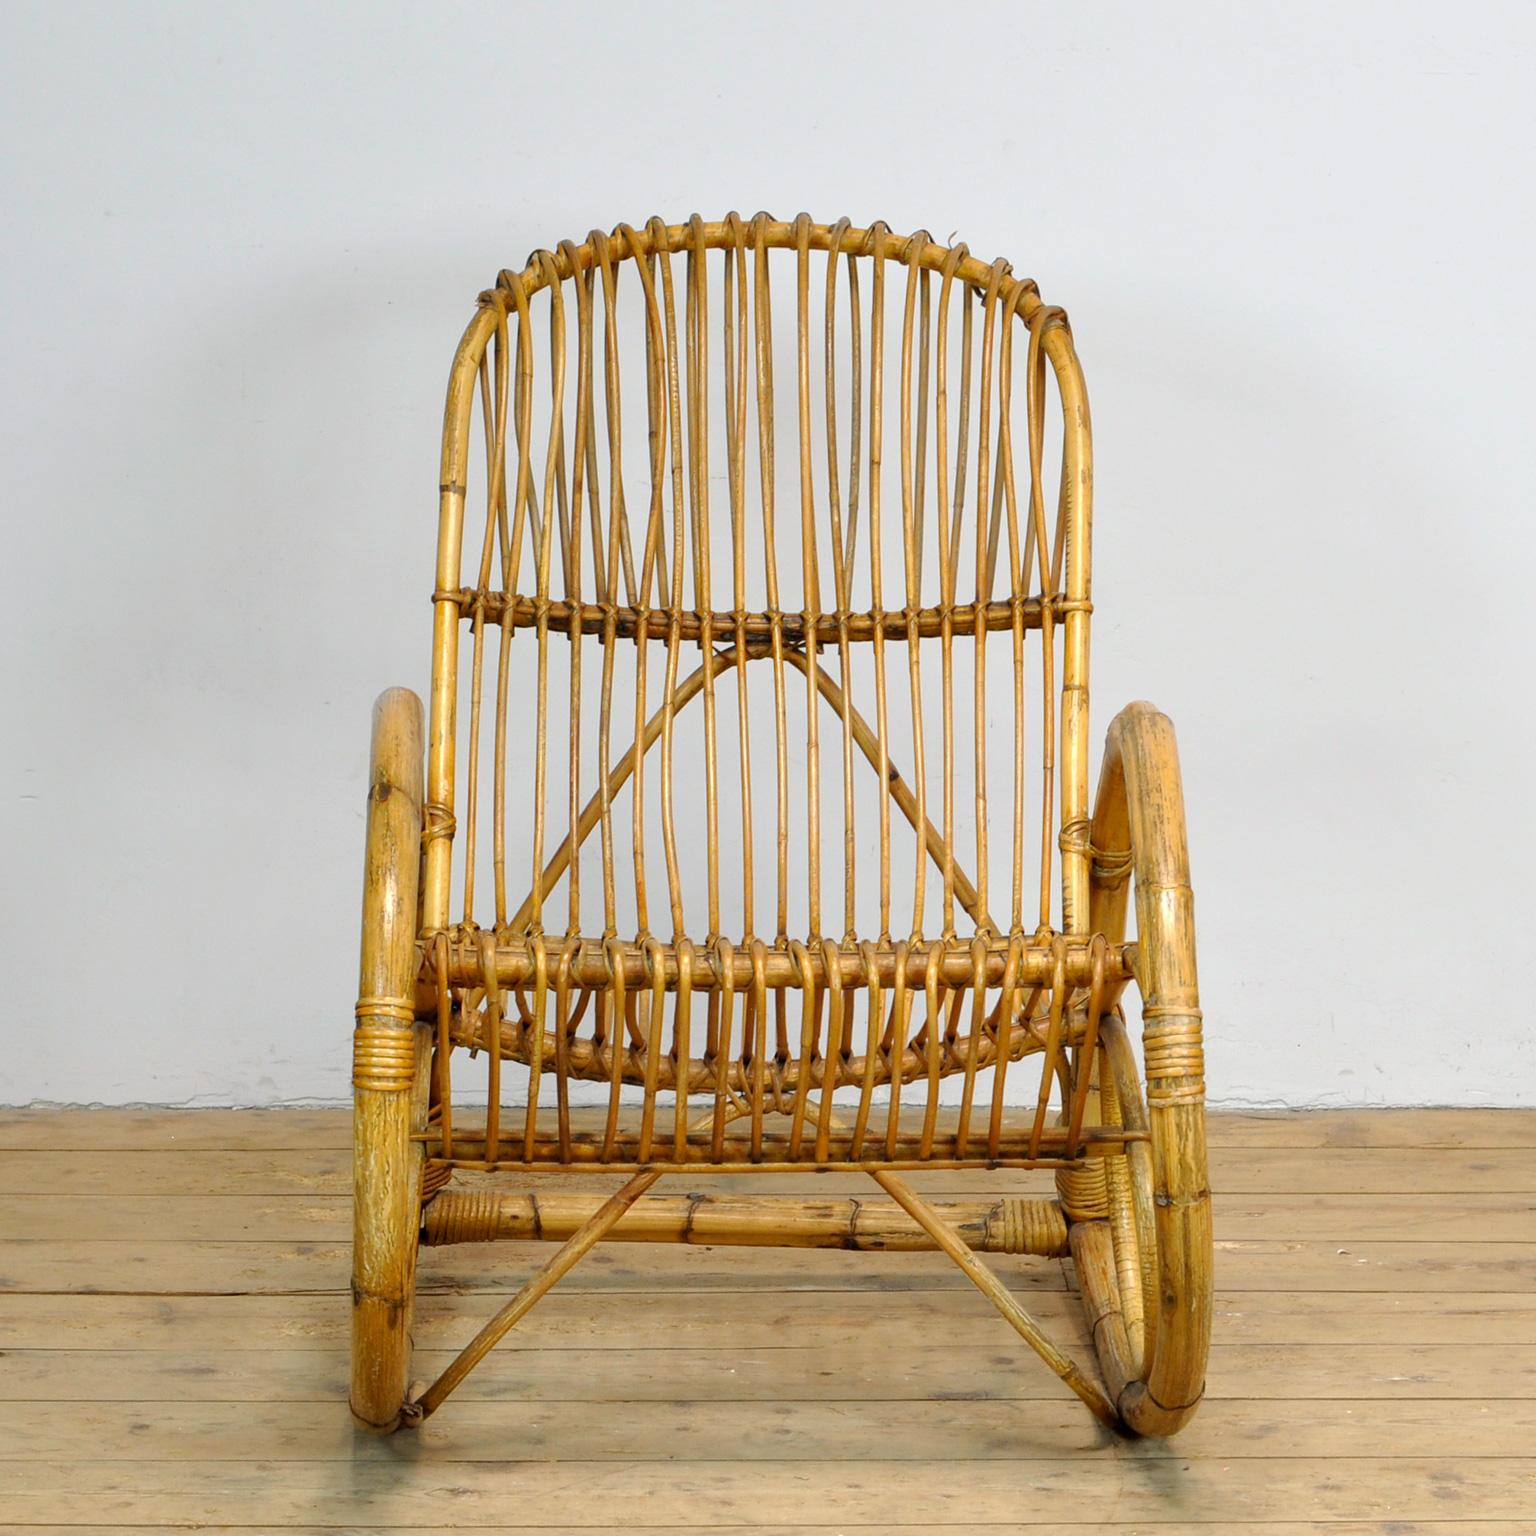 Rattan-Schaukelstuhl von Rohé Noordwolde aus den 1960er Jahren. Der Stuhl hat schöne runde Formen. Der offene Charakter dieses Stuhls hat auch eine räumliche Wirkung.